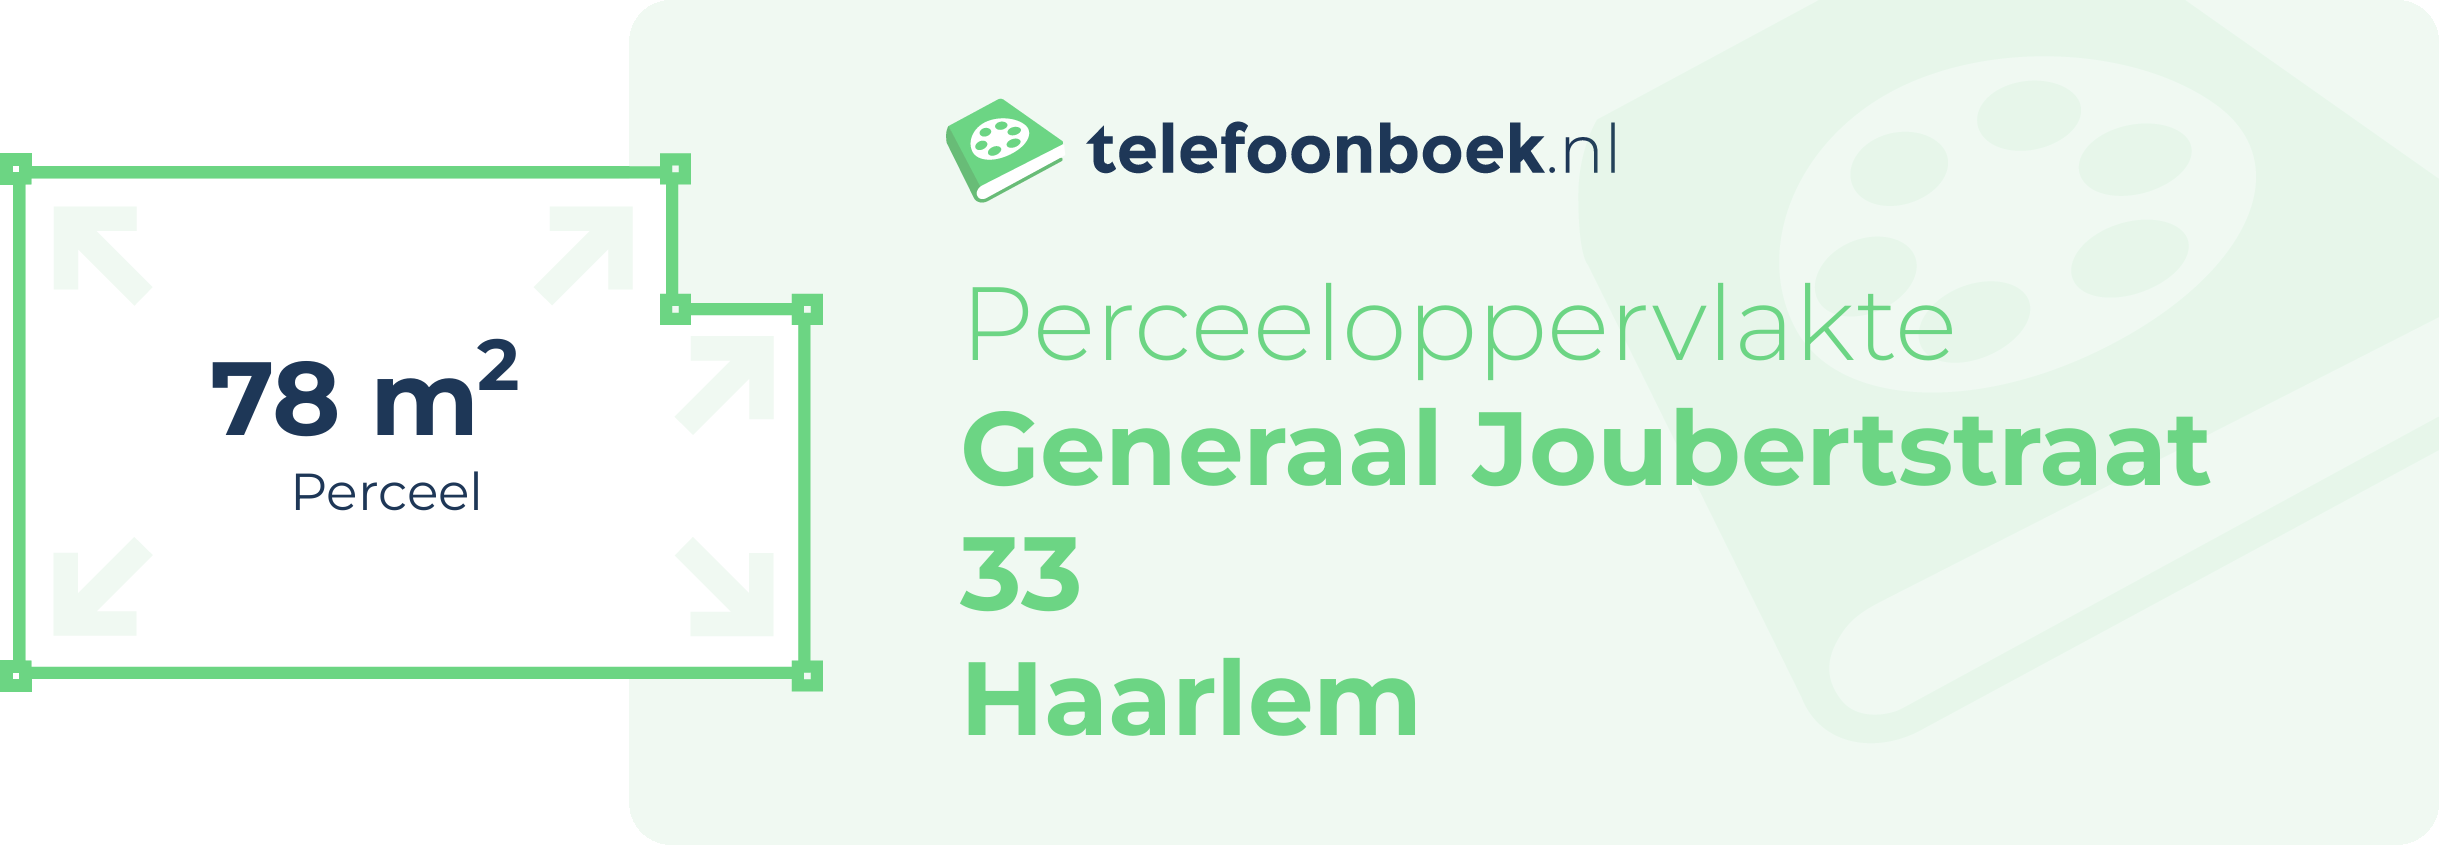 Perceeloppervlakte Generaal Joubertstraat 33 Haarlem